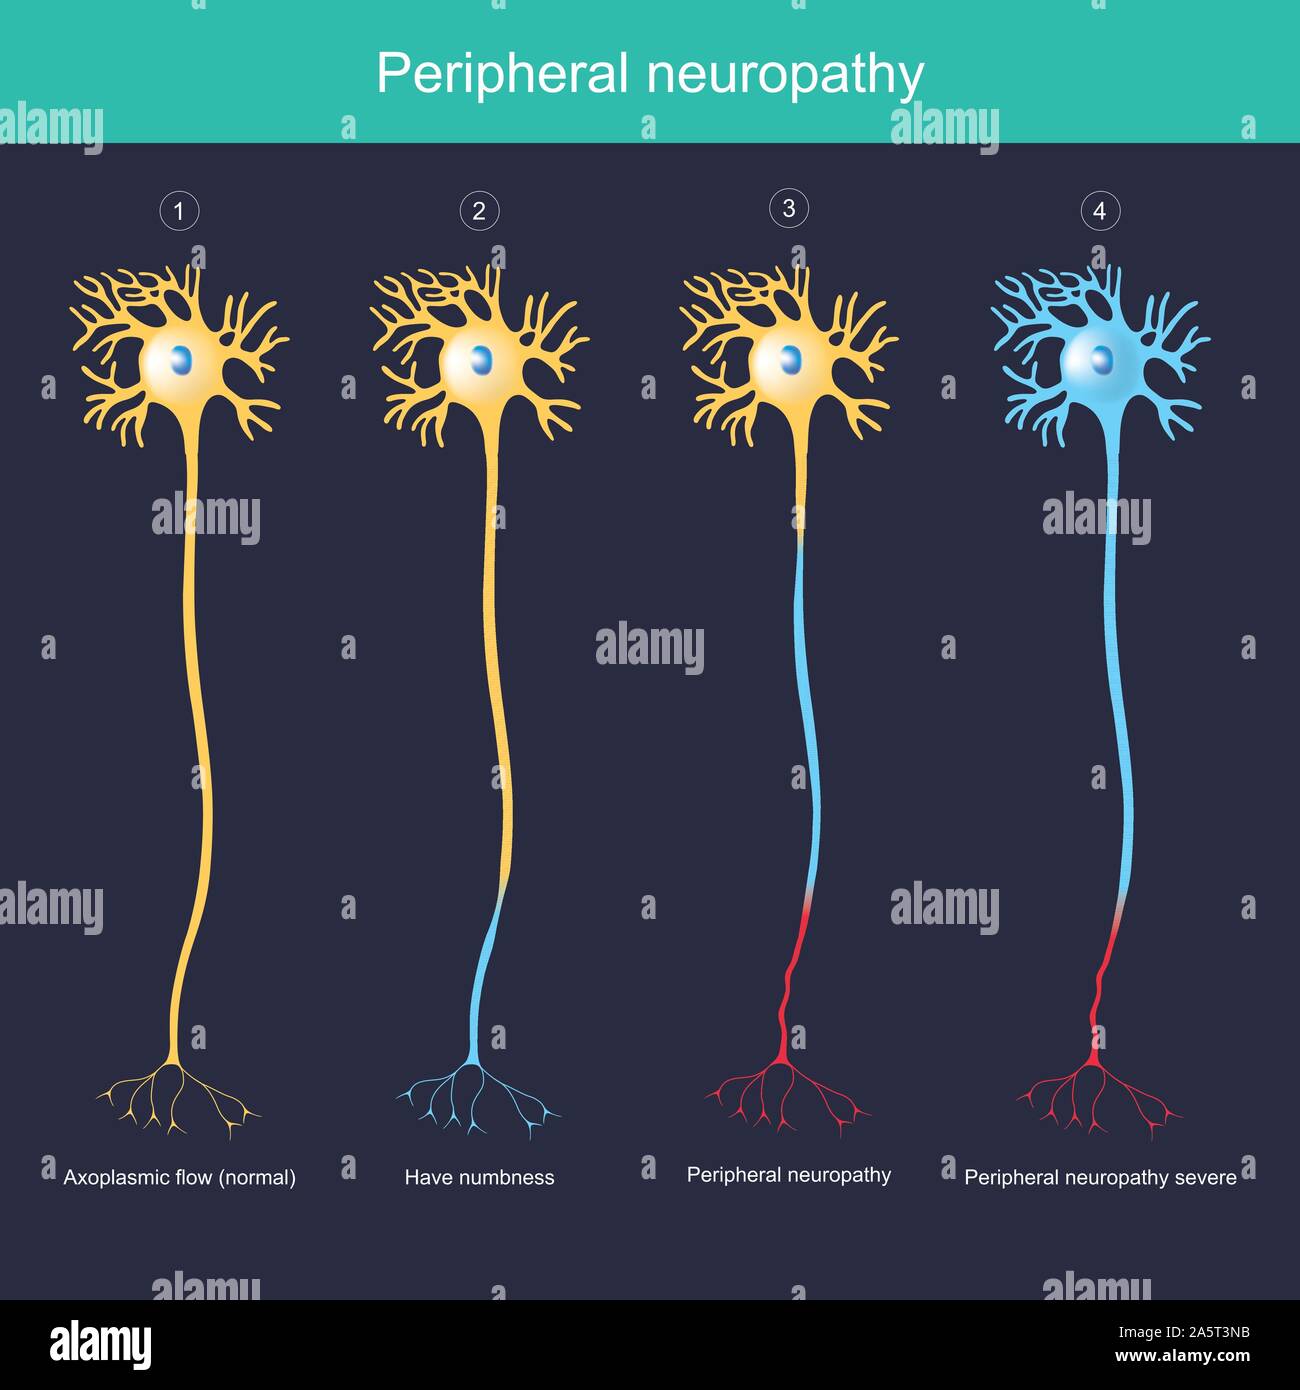 Periphere Neuropathie. Abbildung erklären für die periphere Neuropathie haben taubheitsgefühl bis schwere Entzündung. Stock Vektor